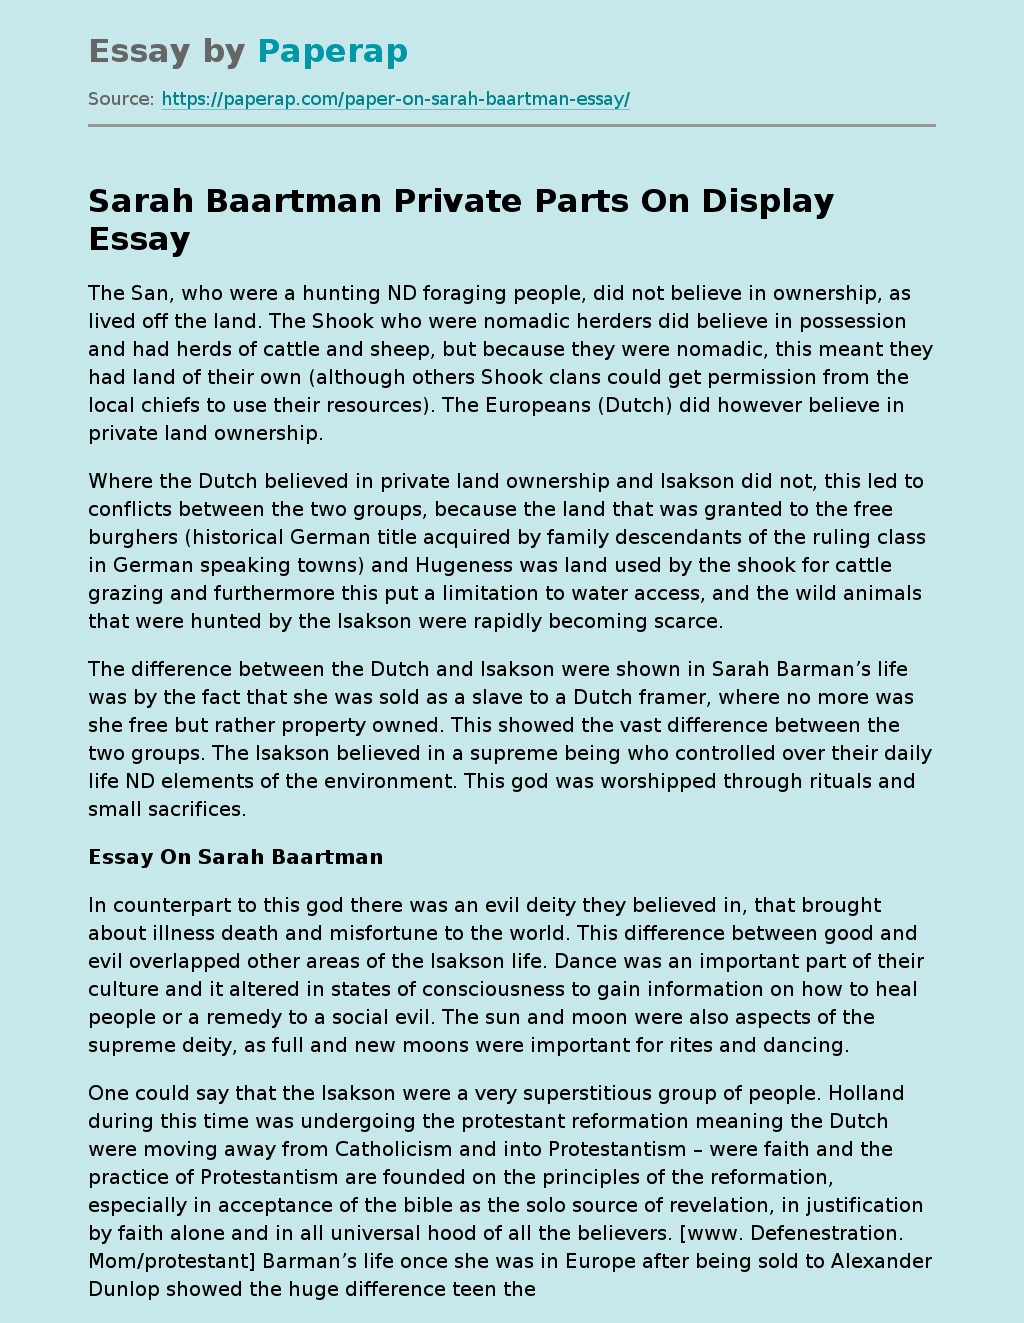 Sarah Baartman Private Parts On Display